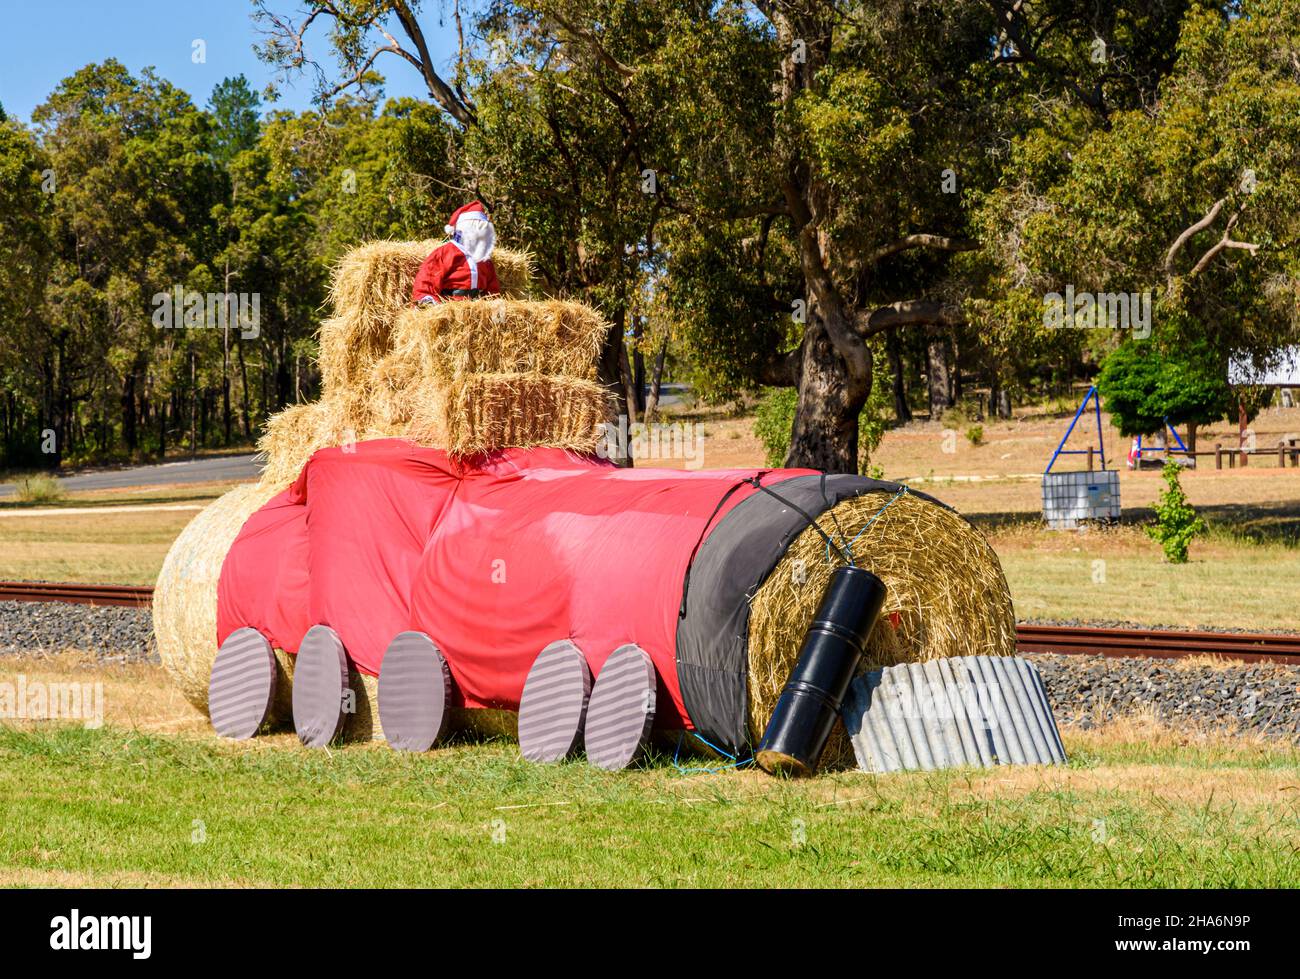 Decoraciones navideñas de Navidad del Padre en varios escenarios bordean el camino a través de la ciudad rural de Kirup, Australia Occidental, Australia Foto de stock